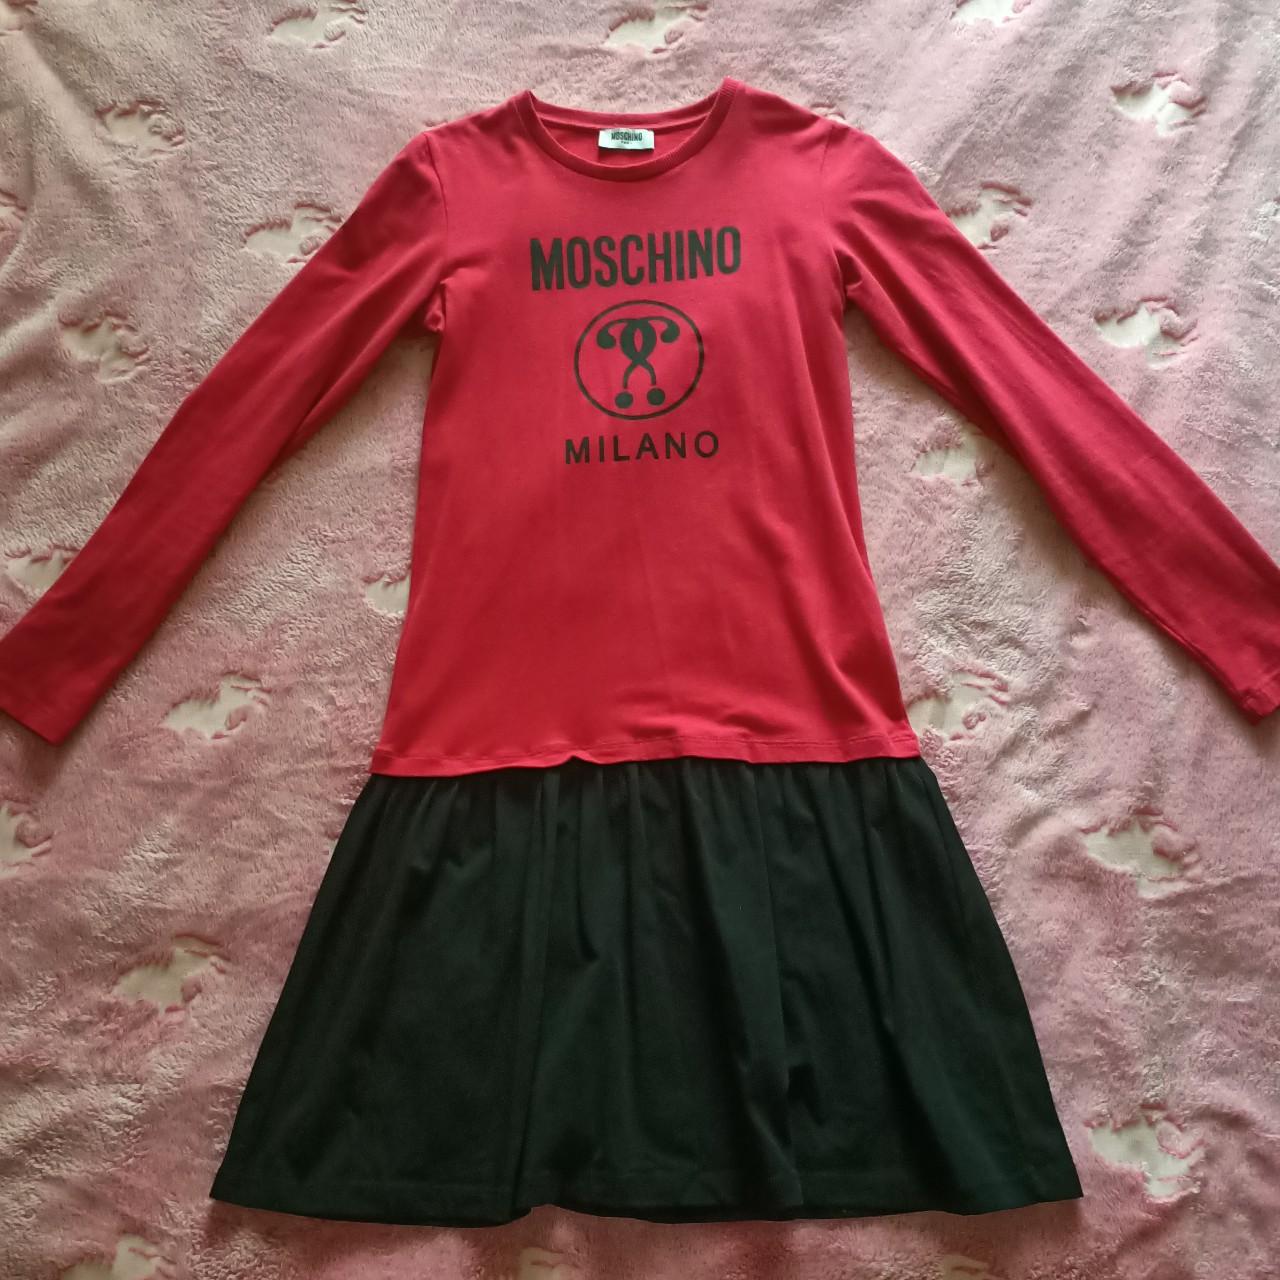 Moschino Women's Dress | Depop